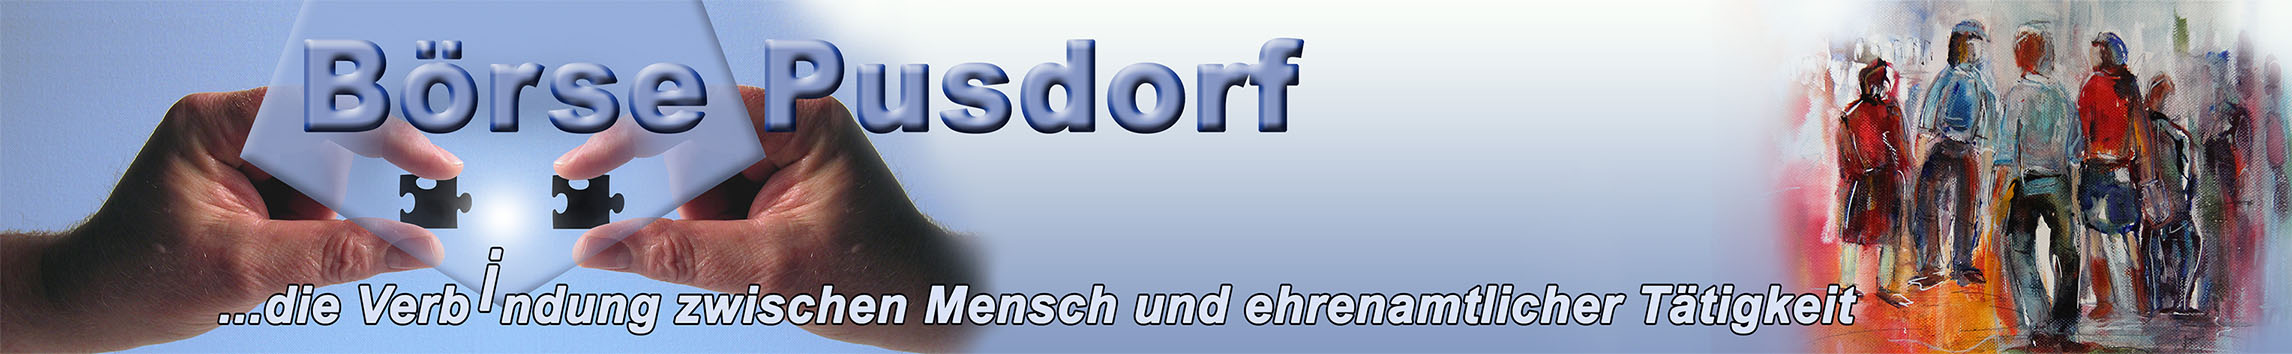 pusdorf.info – Ehrenamt für den Stadtteil